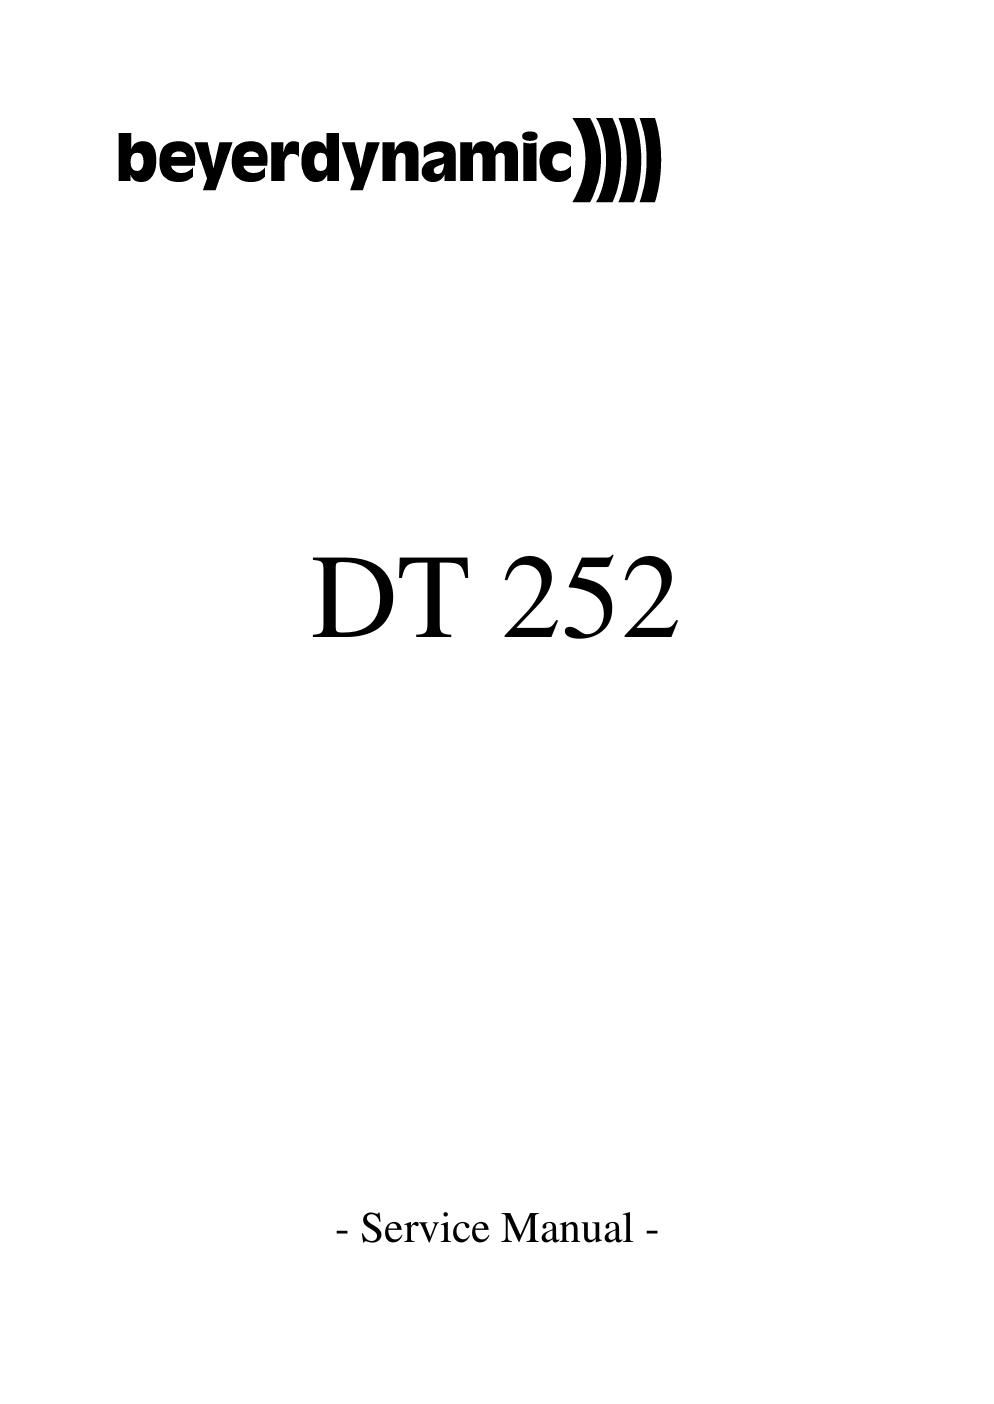 beyerdynamic dt 252 service manual